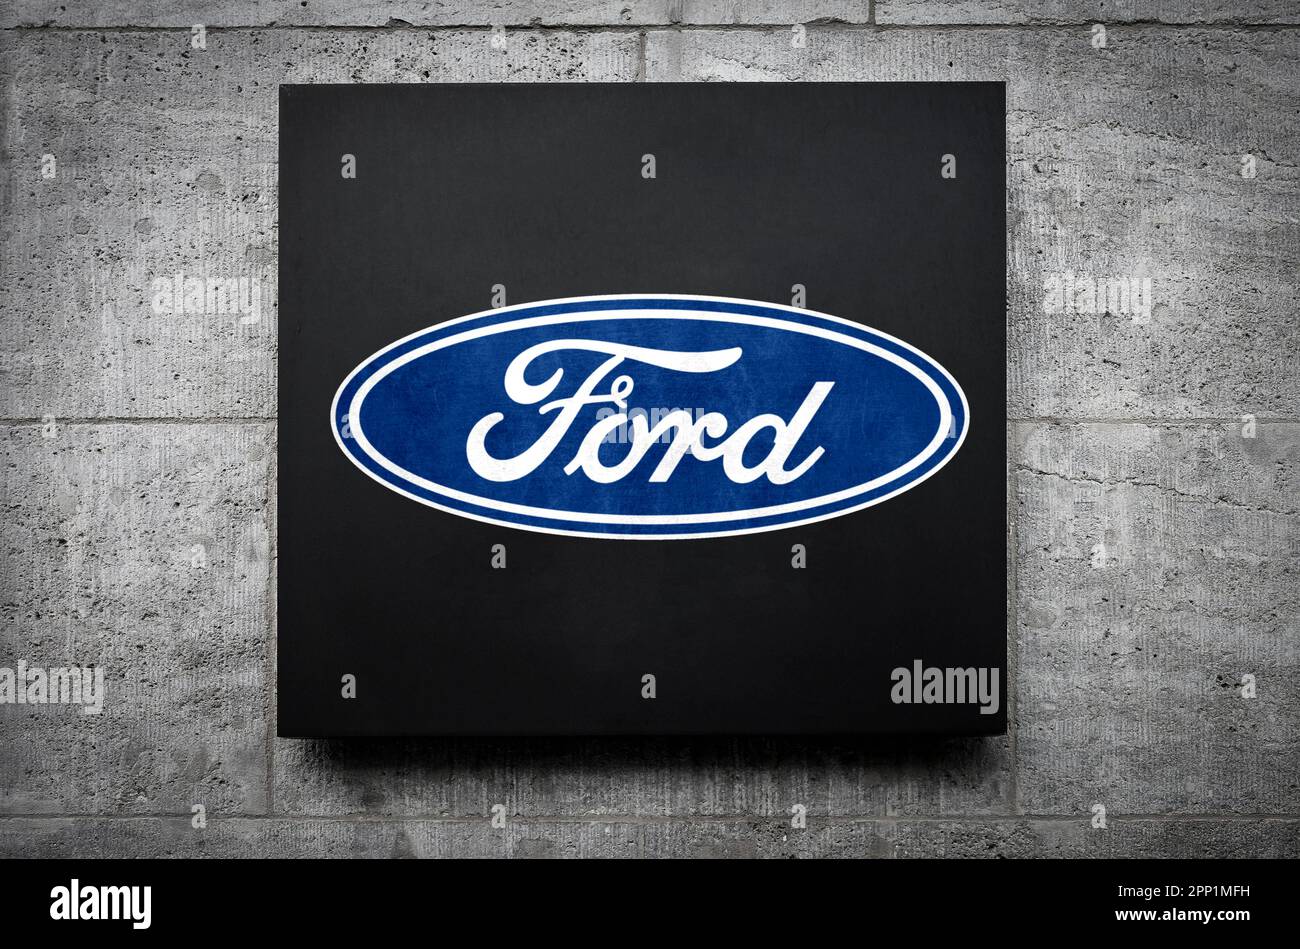 Ford Motor Company Stock Photo